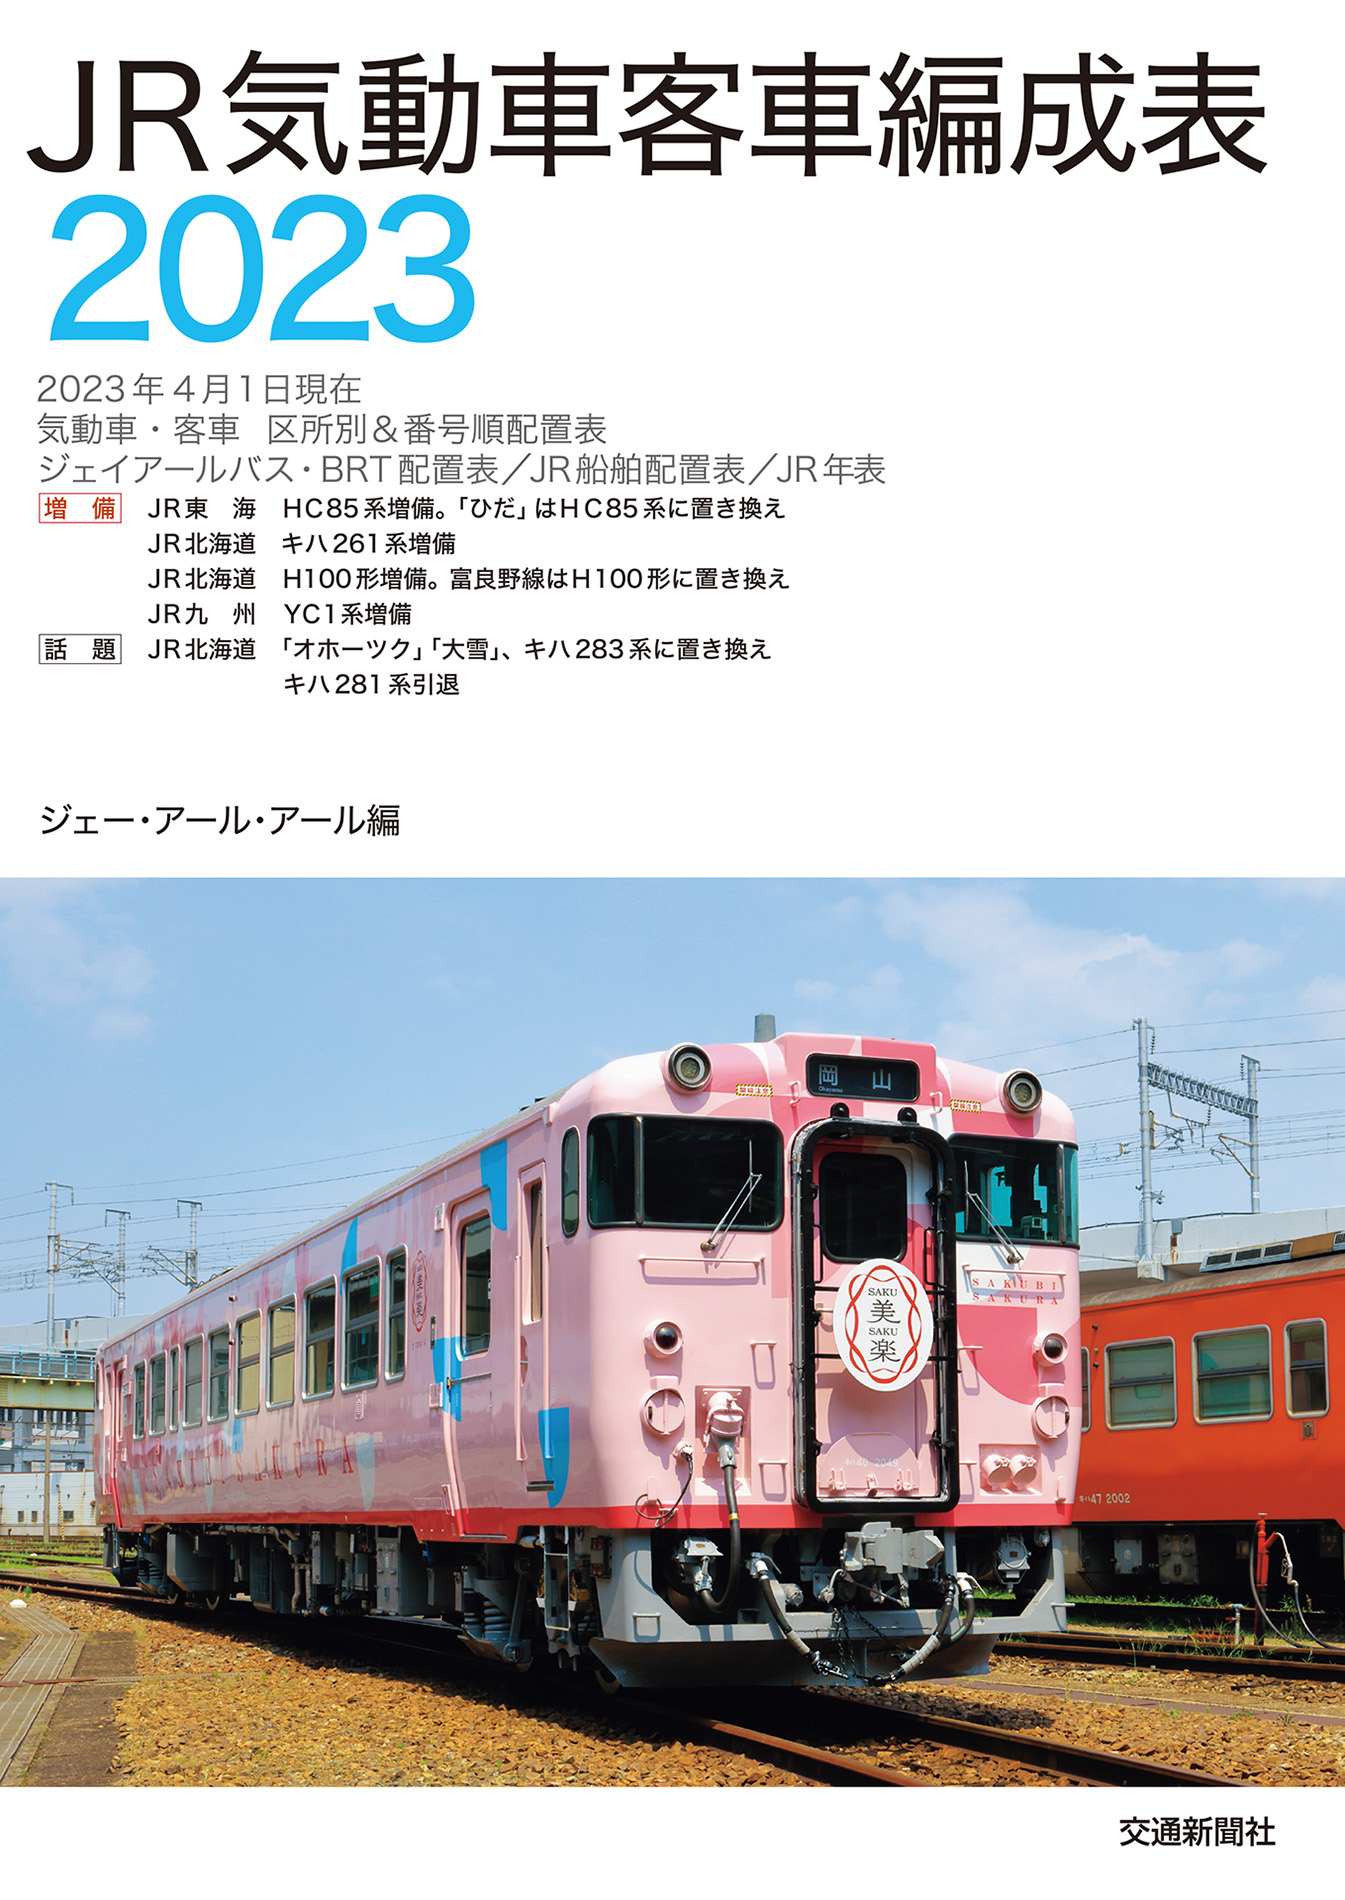 JR気動車客車編成表2023 - ジェー・アール・アール - ビジネス・実用書 